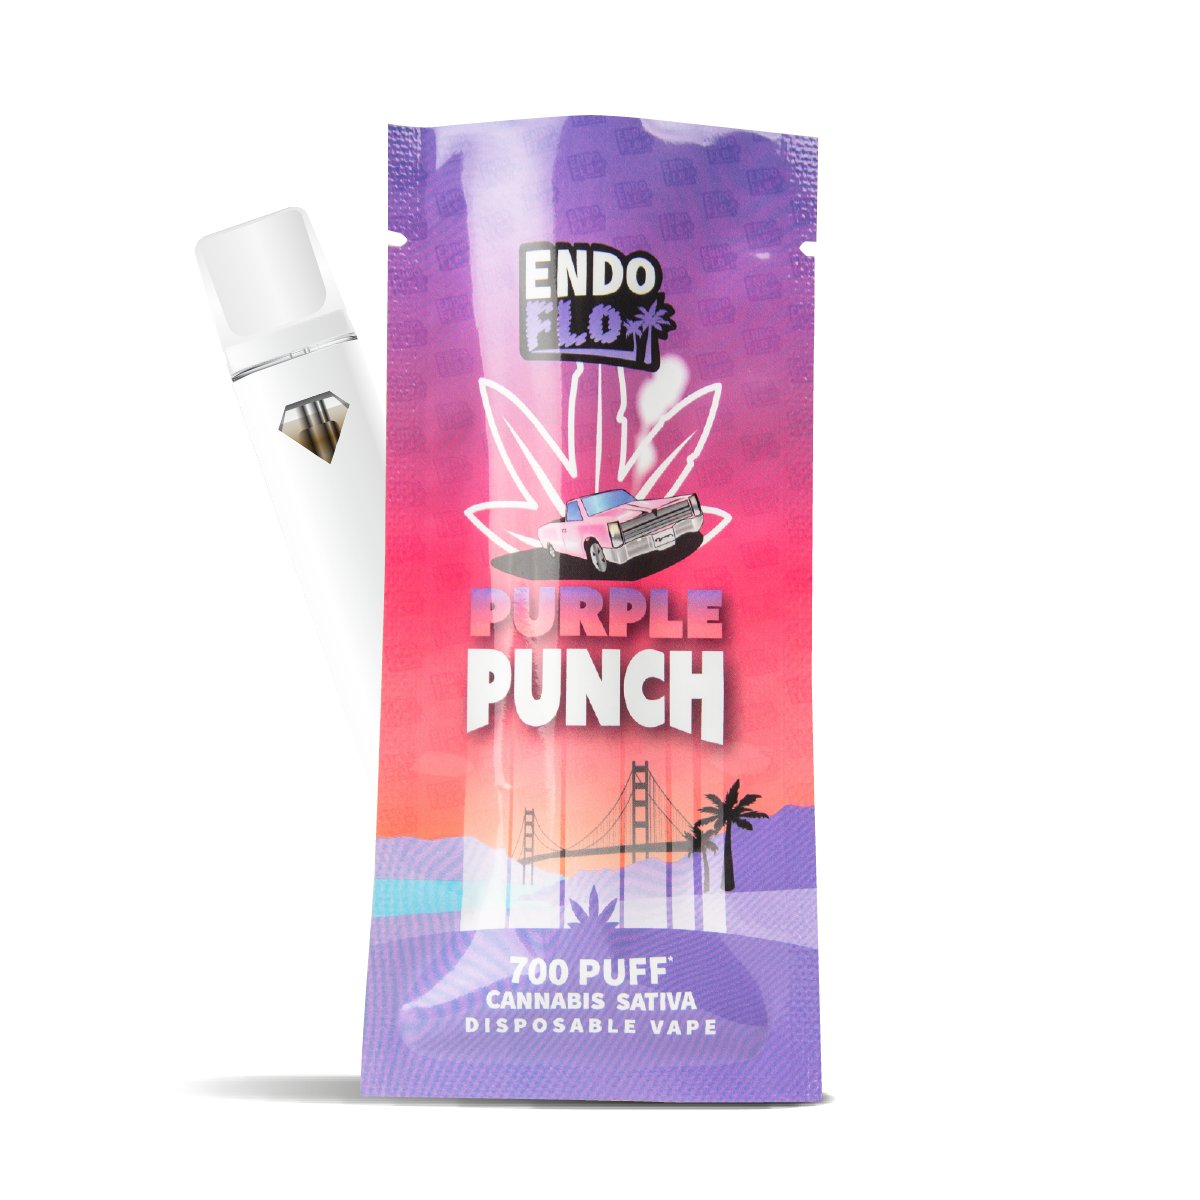 endoflo cbd vape pen purple punch